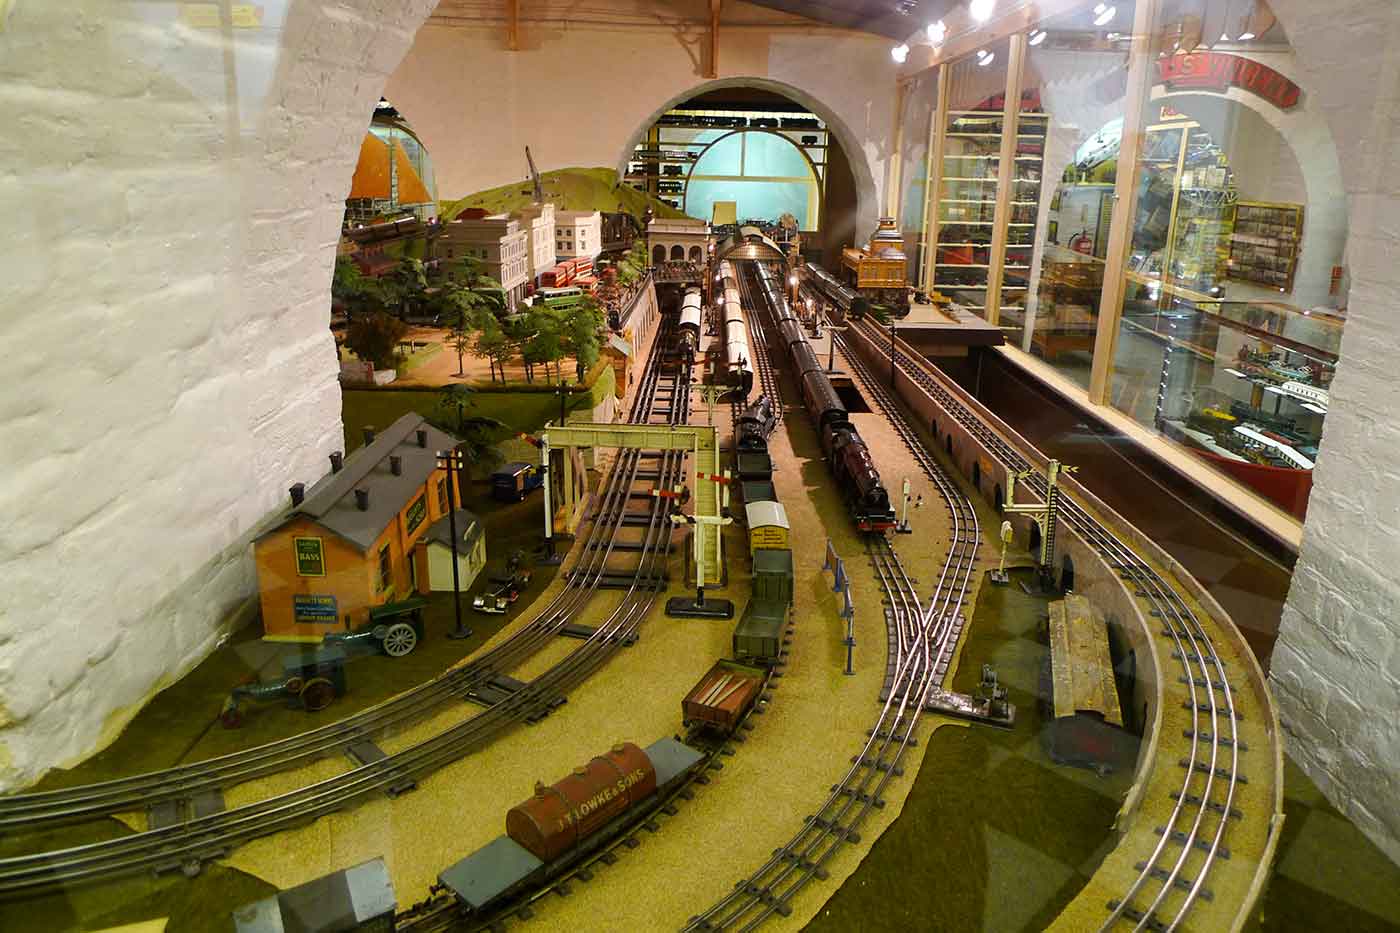 Brighton Toy & Model Museum